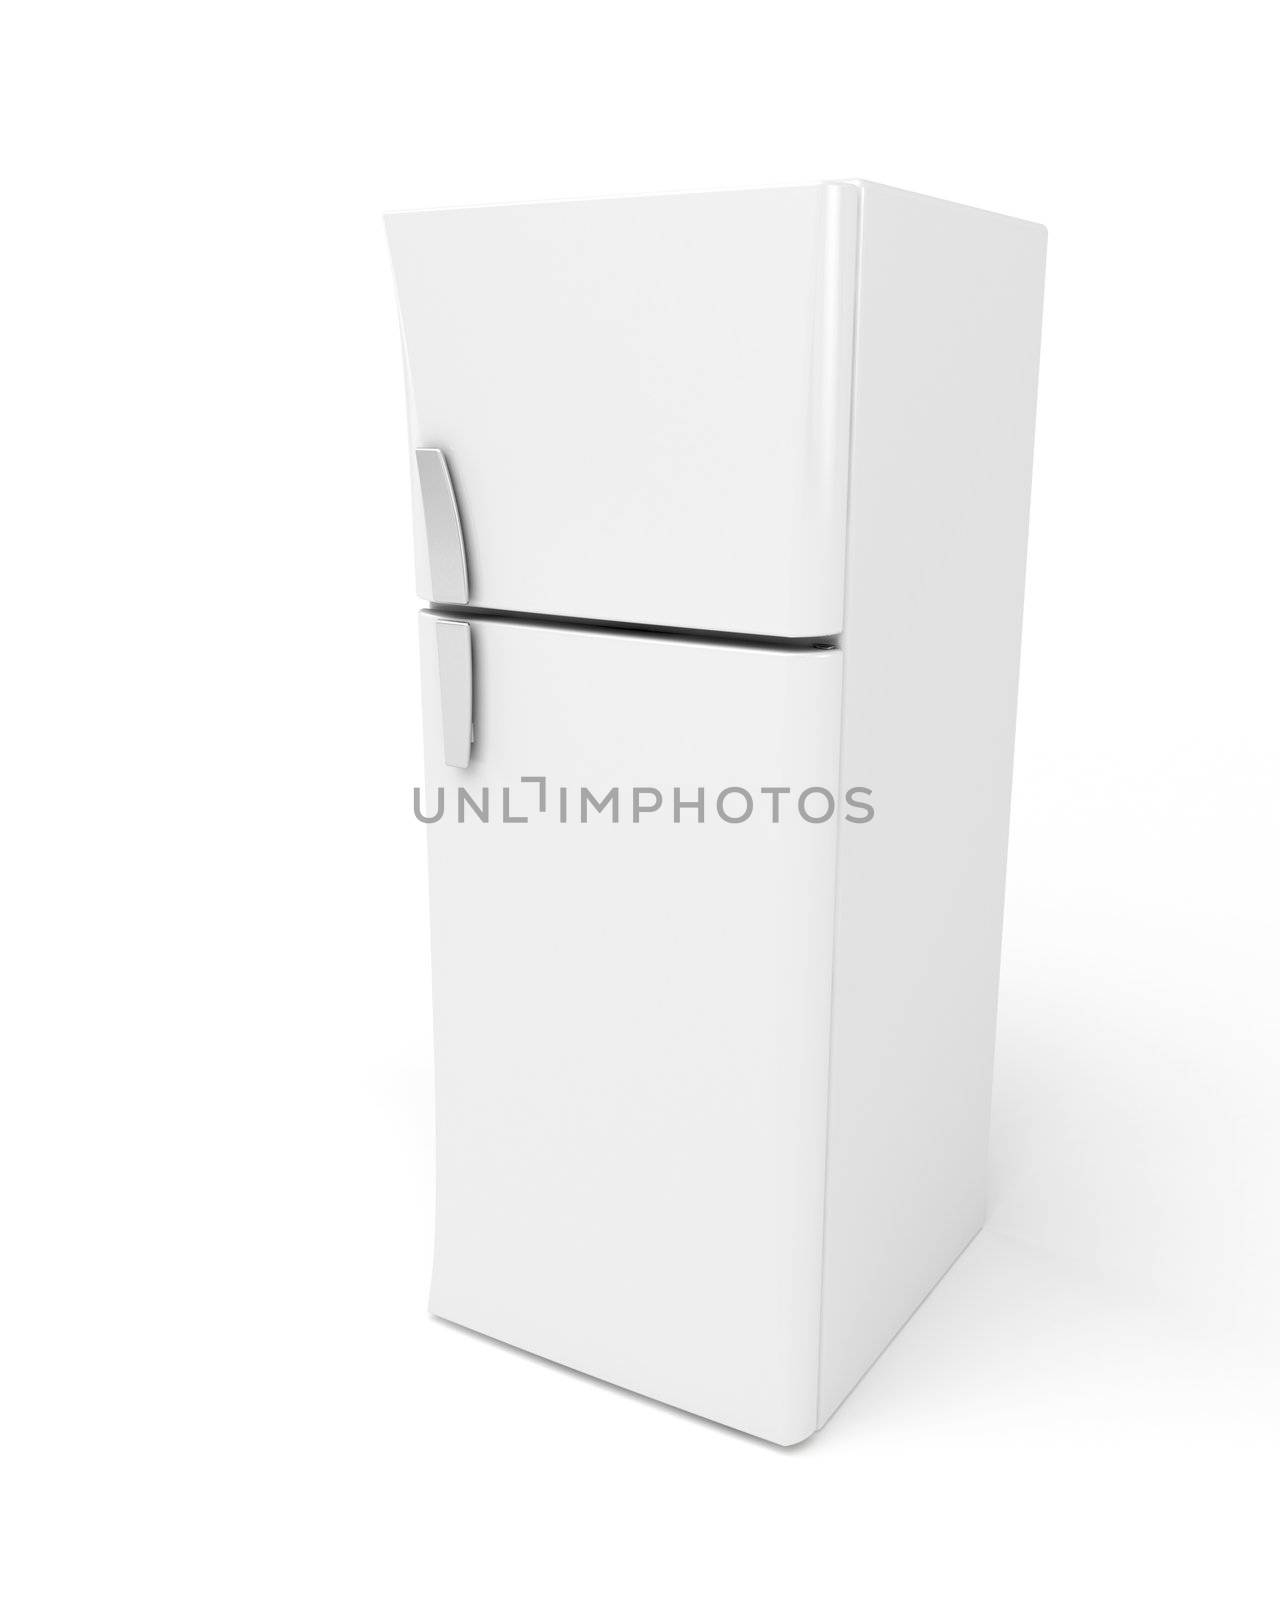 3d image of modern fridge on white background